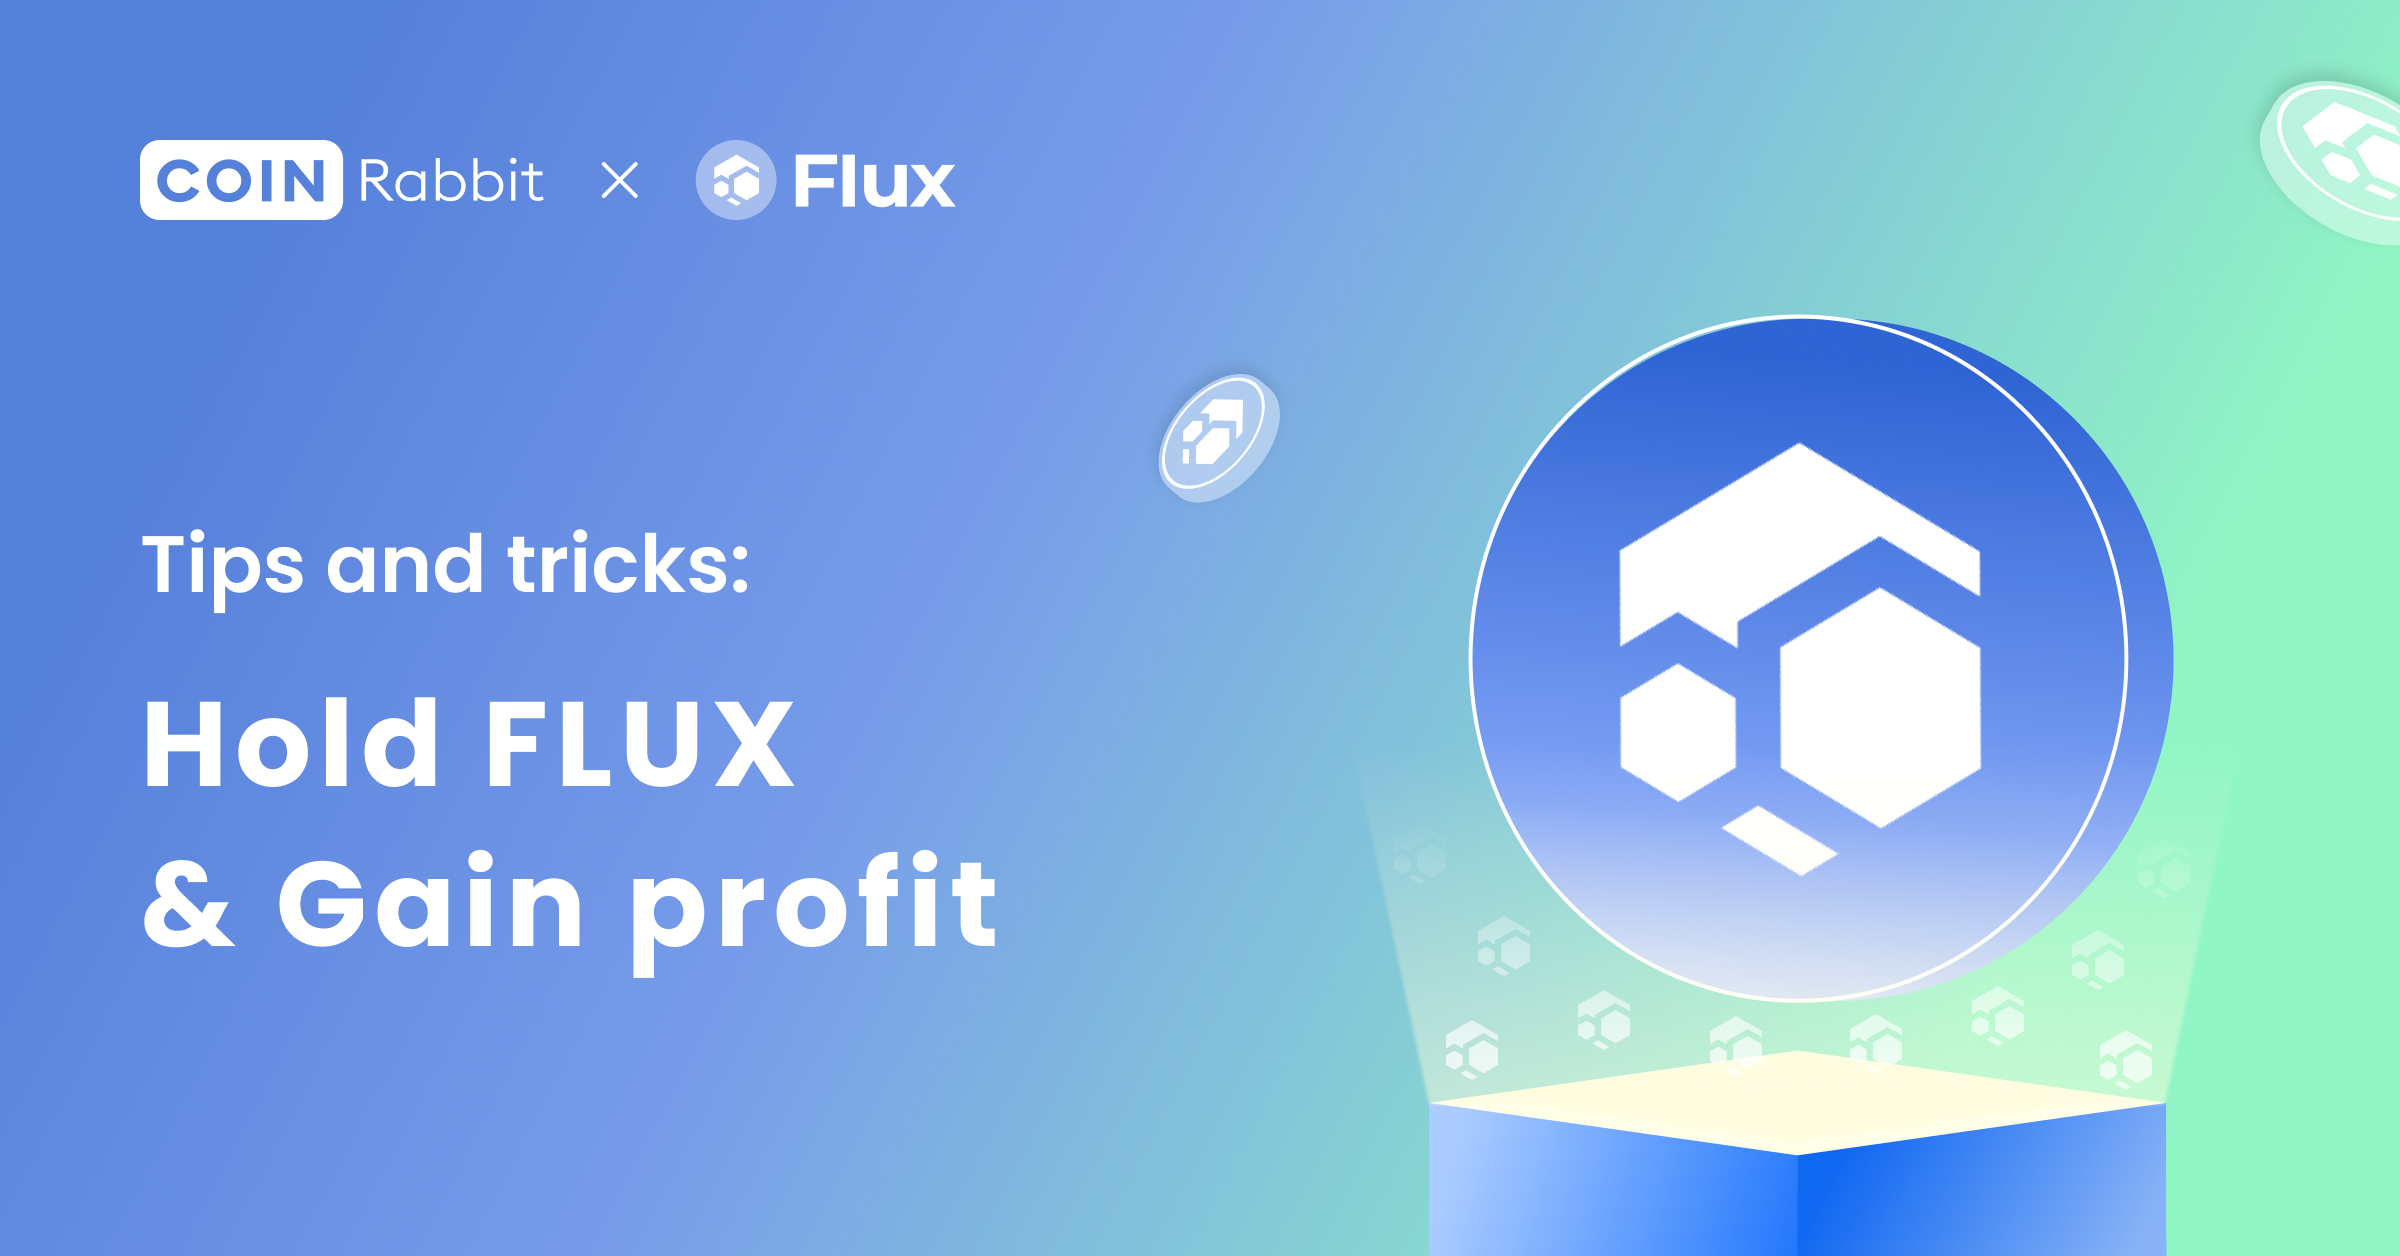 Flux-Web3 Cloud (@RunOnFlux) / X